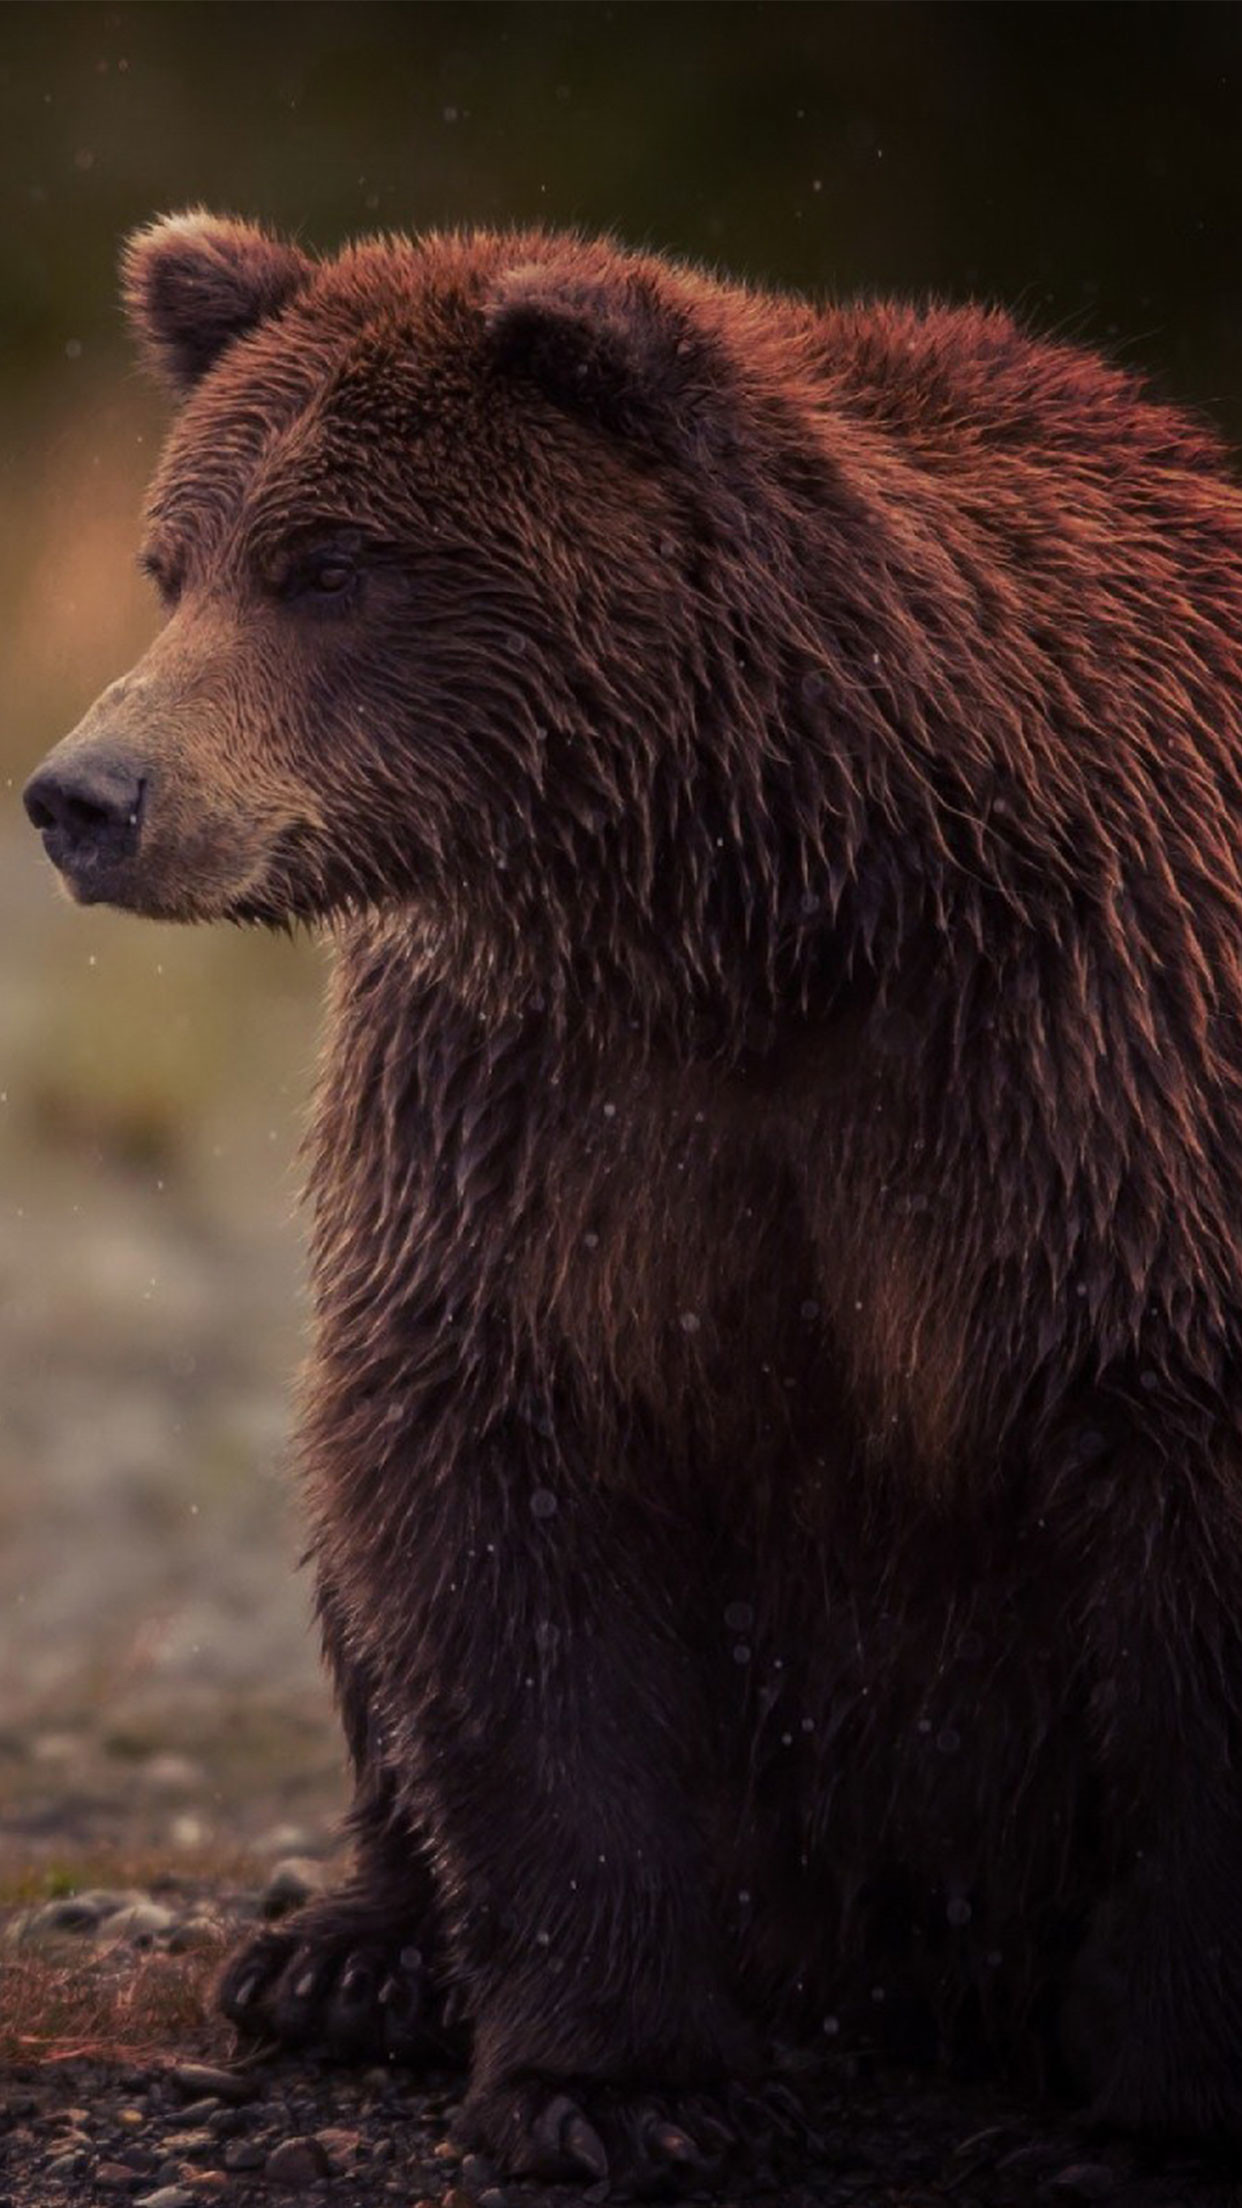 oso fondo de pantalla para iphone,oso café,oso,oso grizzly,animal terrestre,oso kodiak